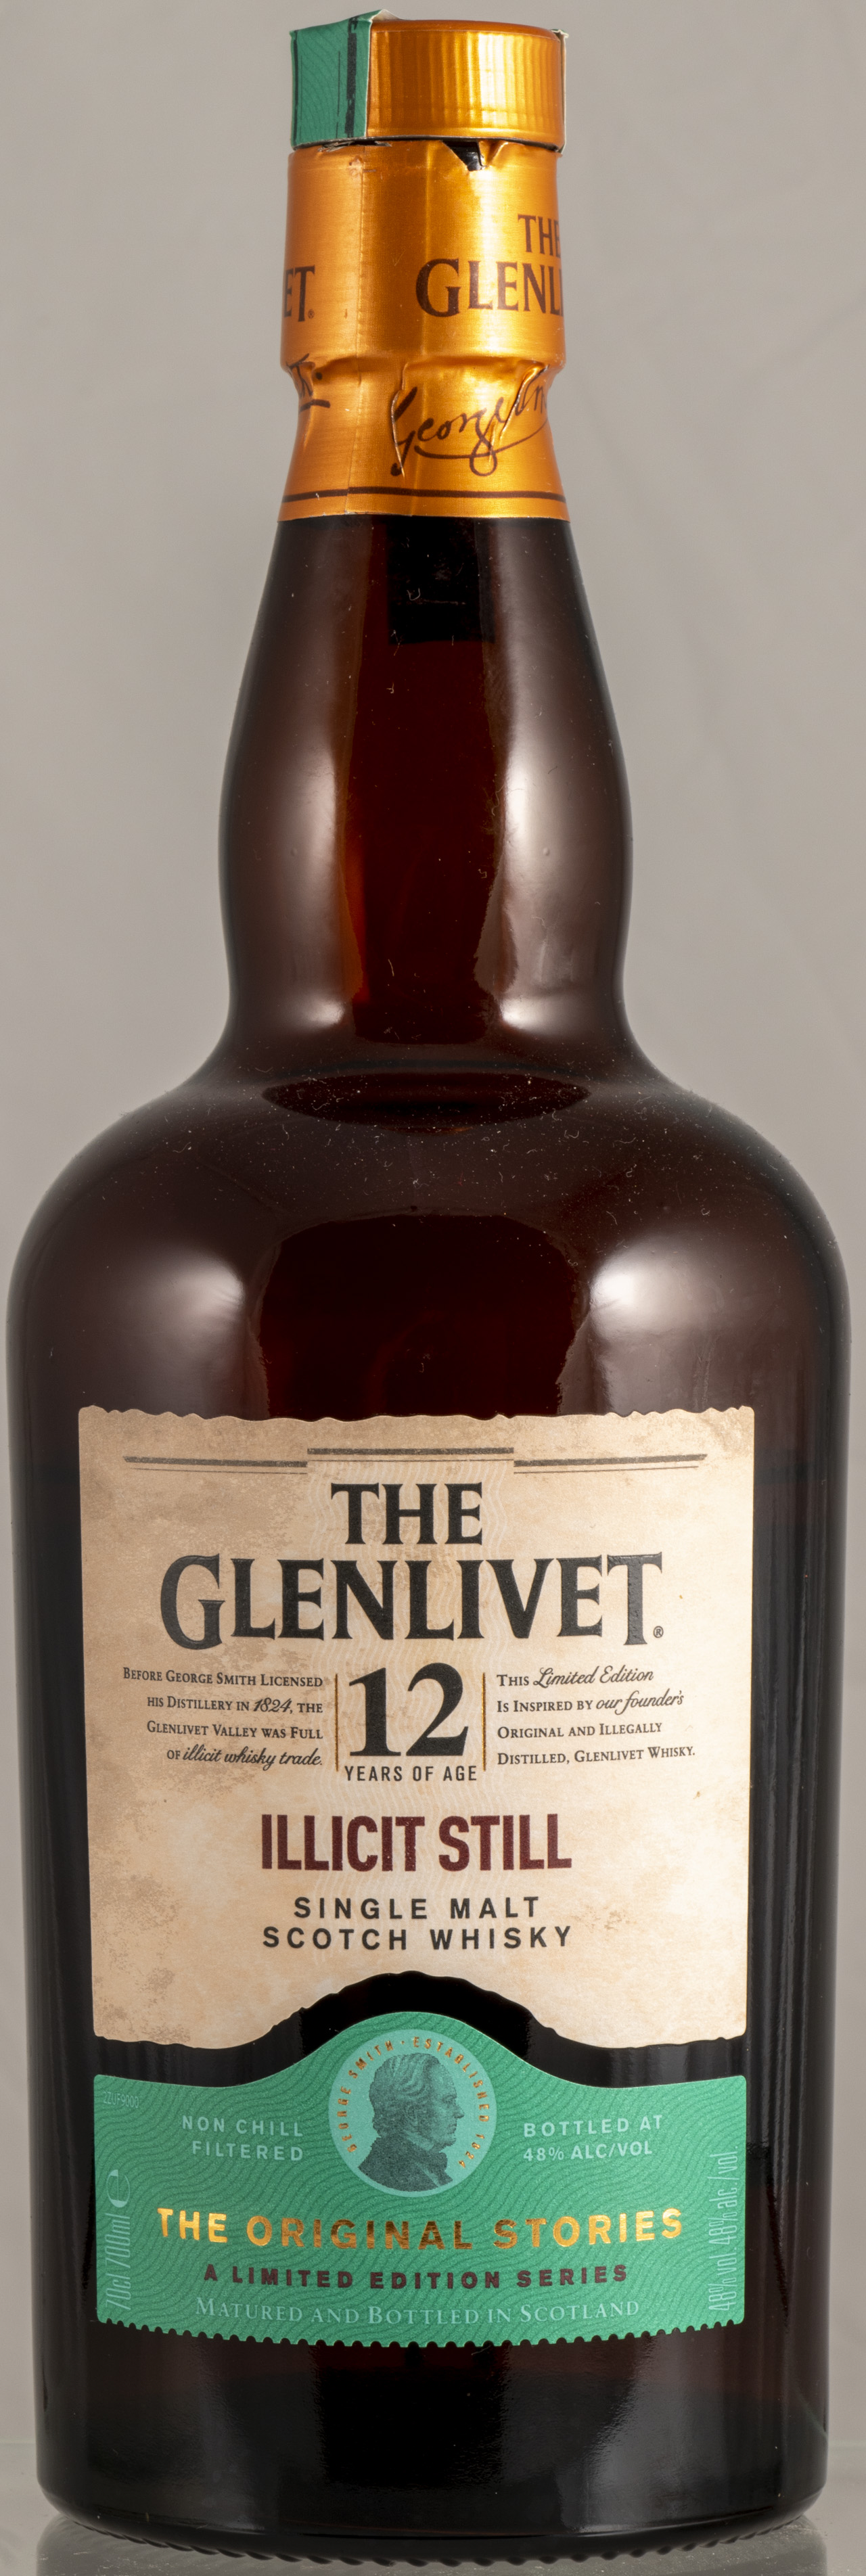 Billede: PHC_6065 - The Glenlivet 12 - Illicit Still - bottle front.jpg